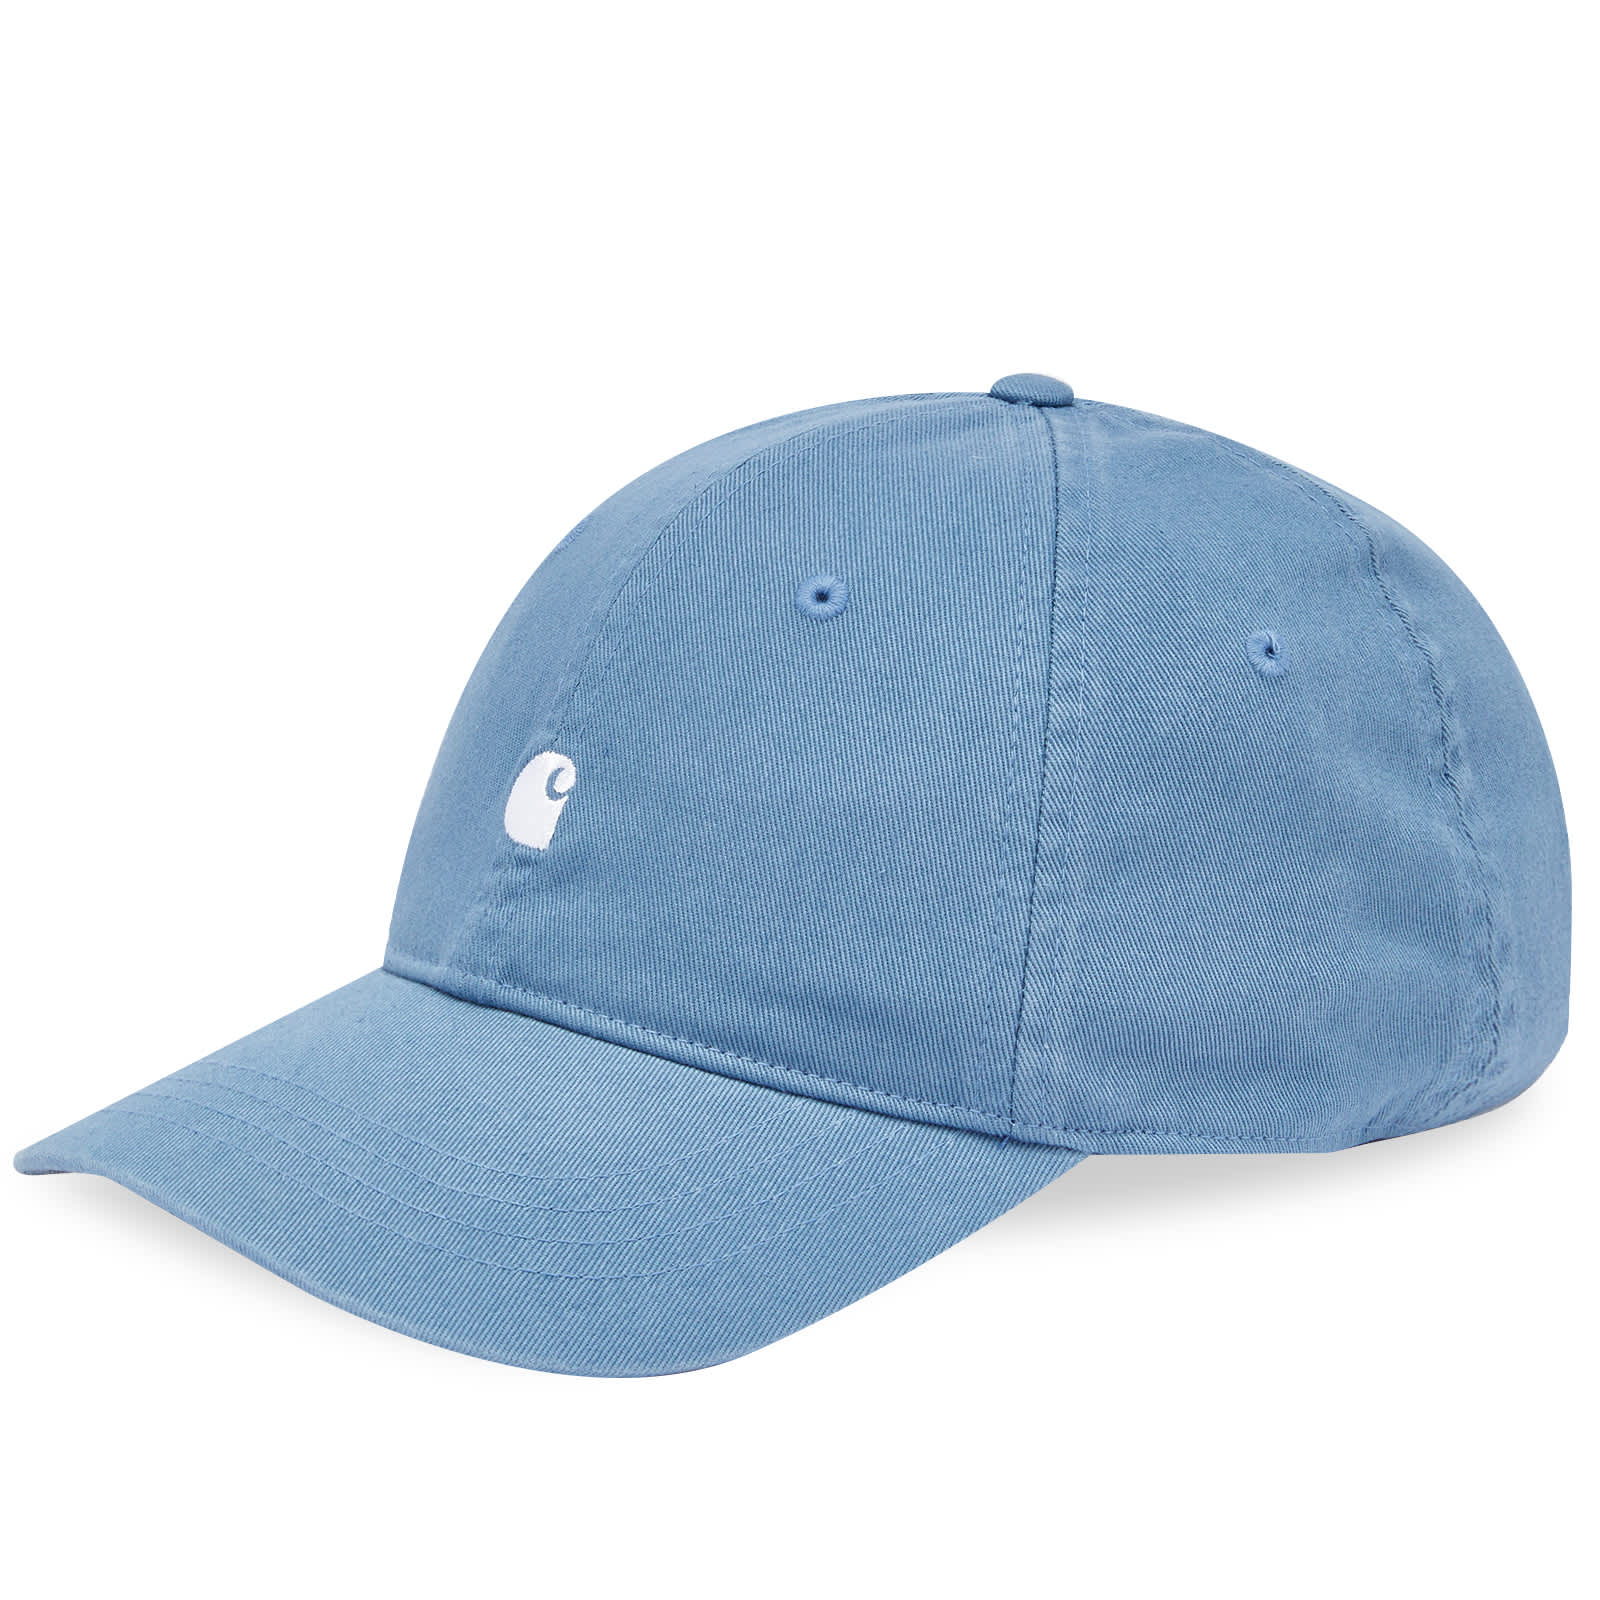 Бейсболка Carhartt Wip Madison Logo, цвет Vancouver Blue & White бейсболка женская салатовая кепка однотонная классическая